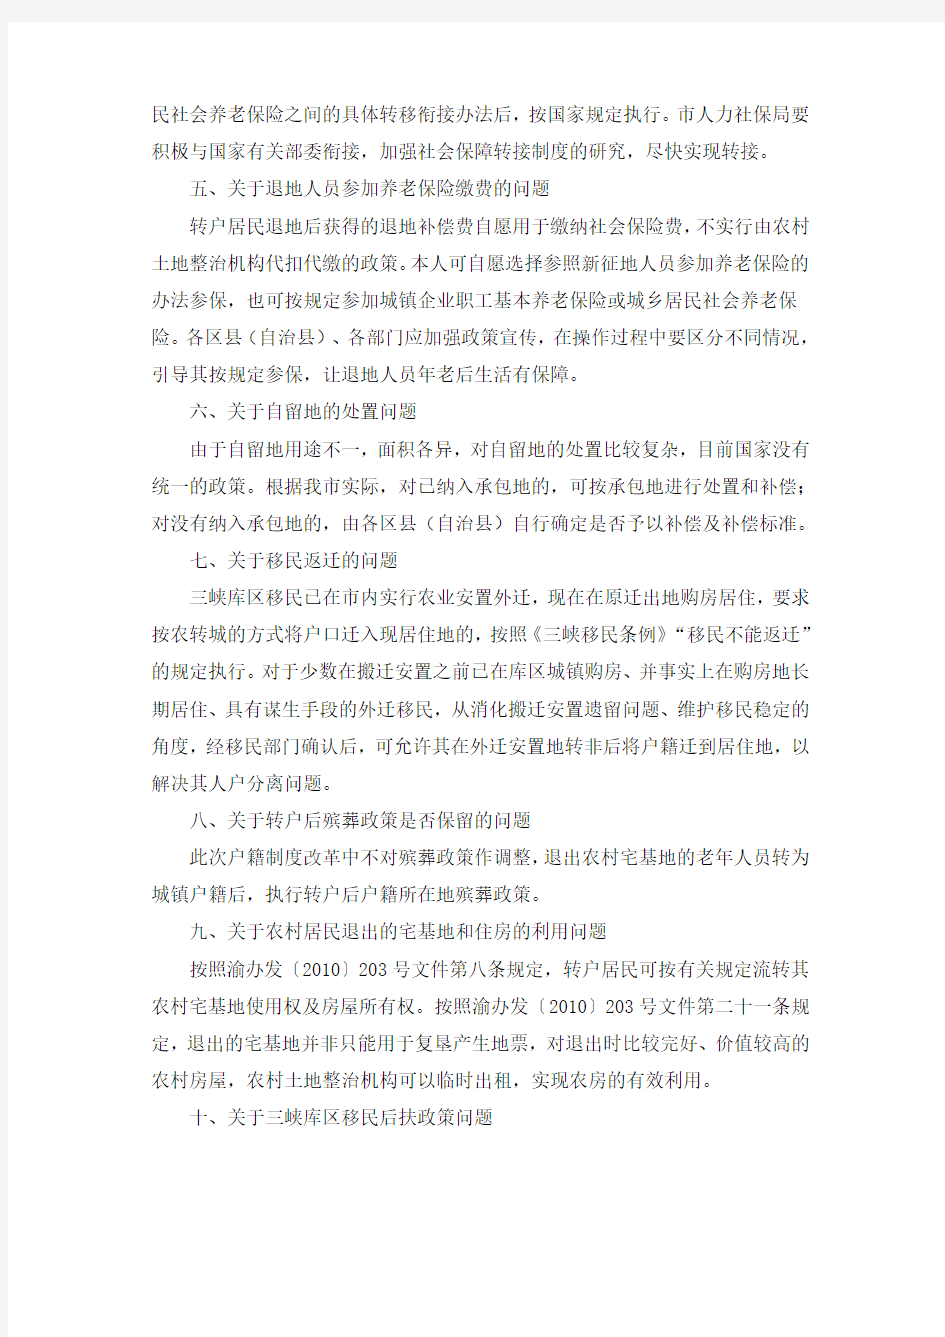 重庆市人民政府办公厅关于推进重庆市户籍制度改革有关问题的通知渝办发〔2010〕269号